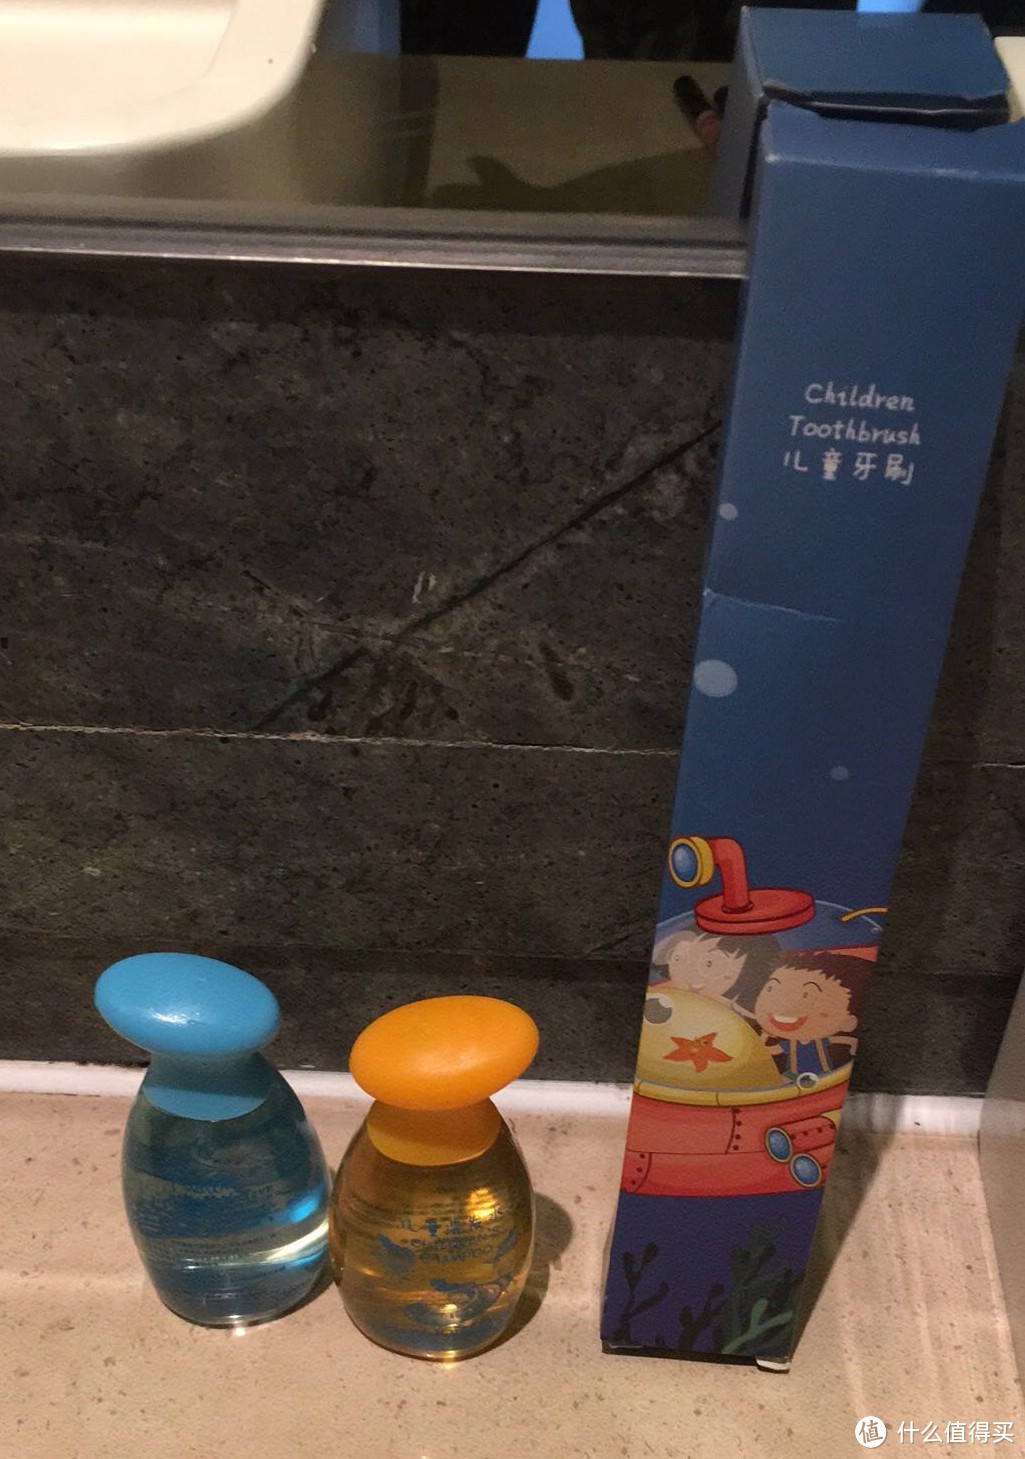 儿童牙刷 儿童洗护用品